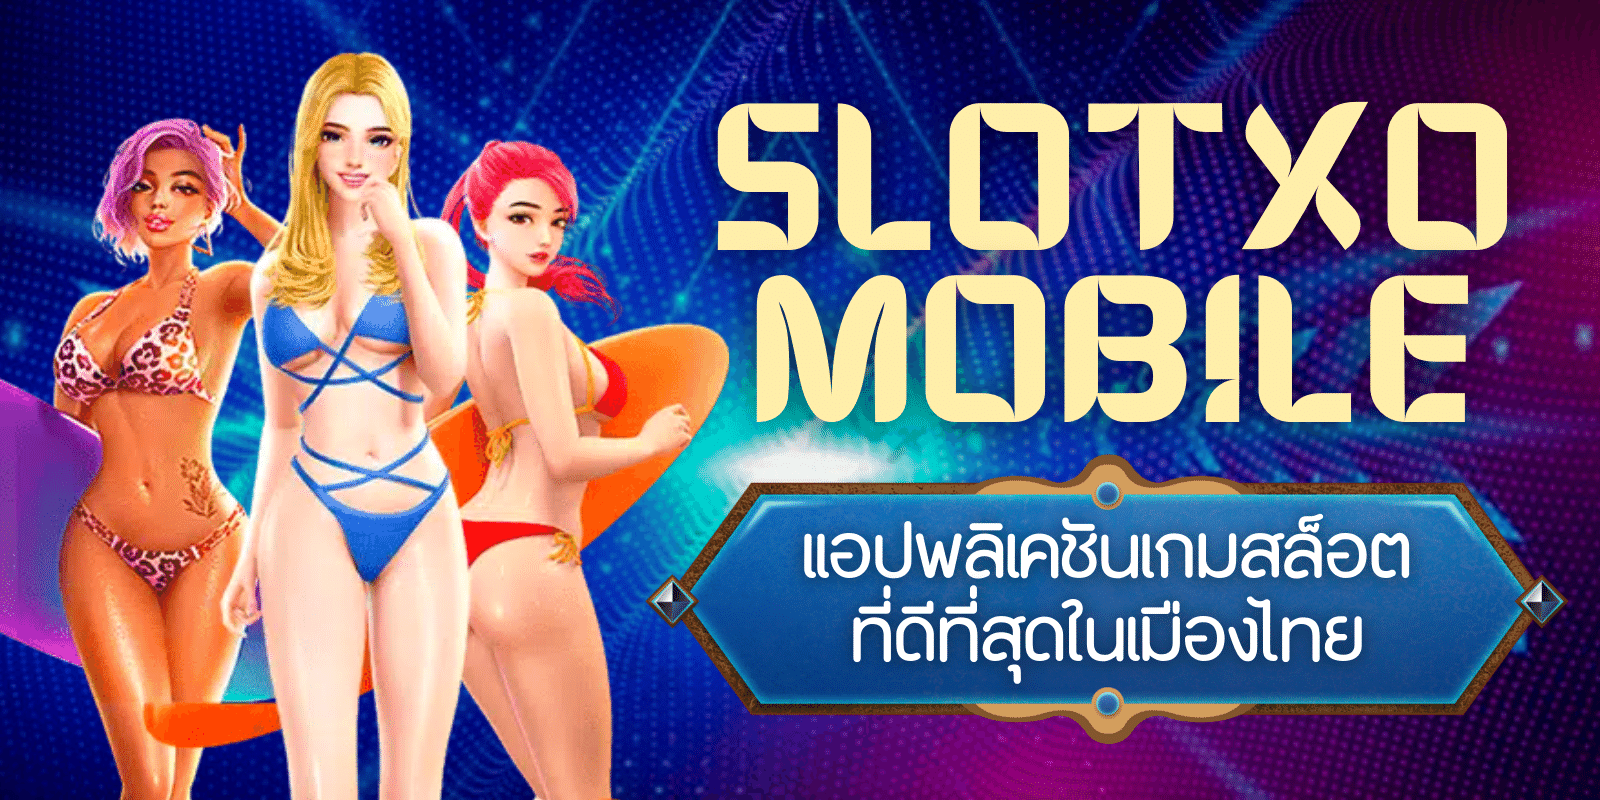 slotxo mobile แอปพลิเคชันเกมสล็อต ที่ดีที่สุดในเมืองไทย